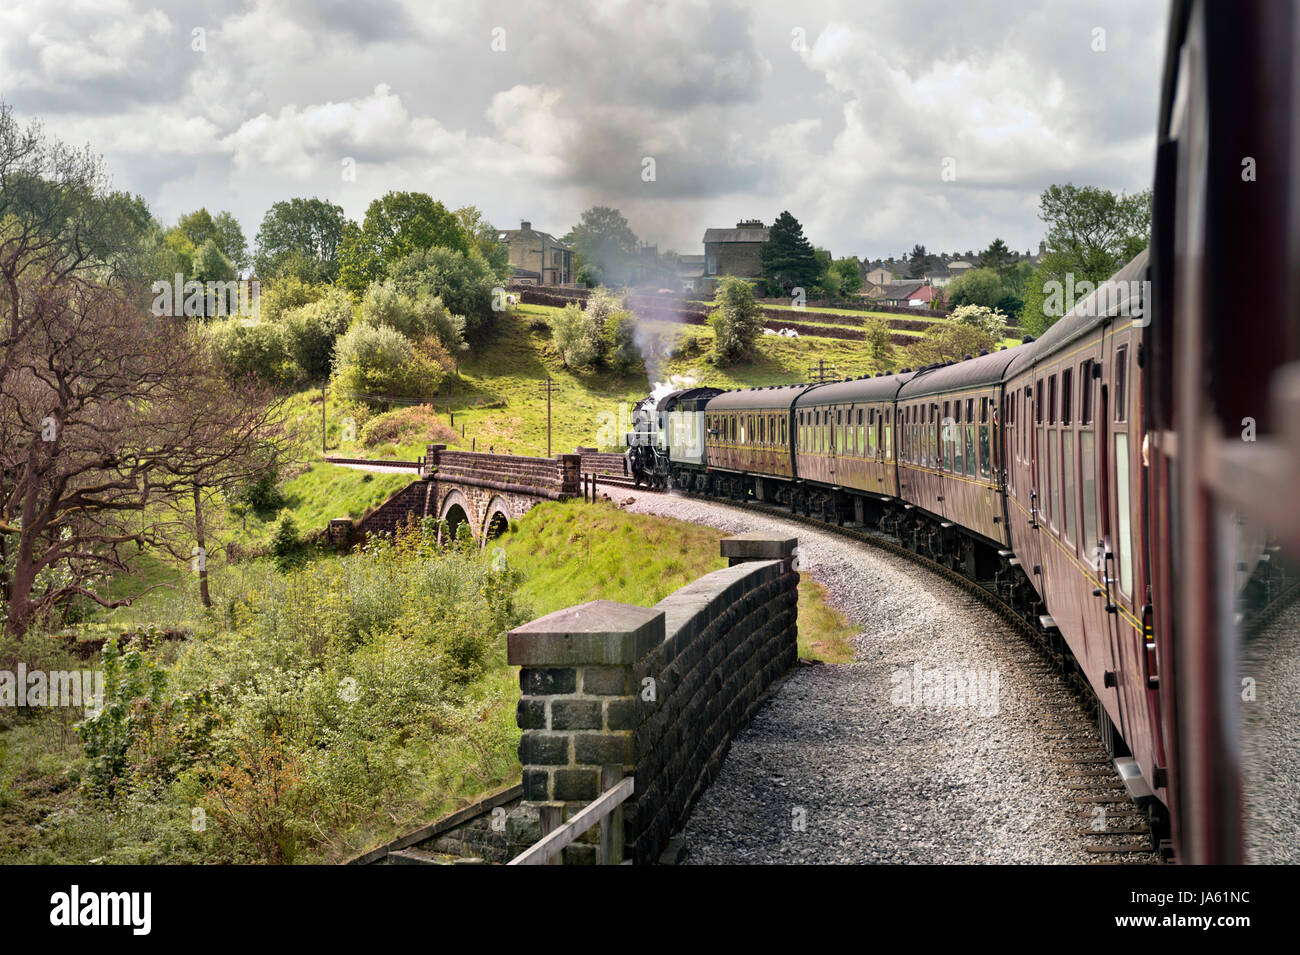 Haworth 1940er Jahren am Wochenende. Zug geschleppt durch amerikanische 2. Weltkrieg S160 2-8-0 Lok Nr. 5820, Keighley und Wert Valley Railway. Keighley, West Yorkshire, Großbritannien Stockfoto